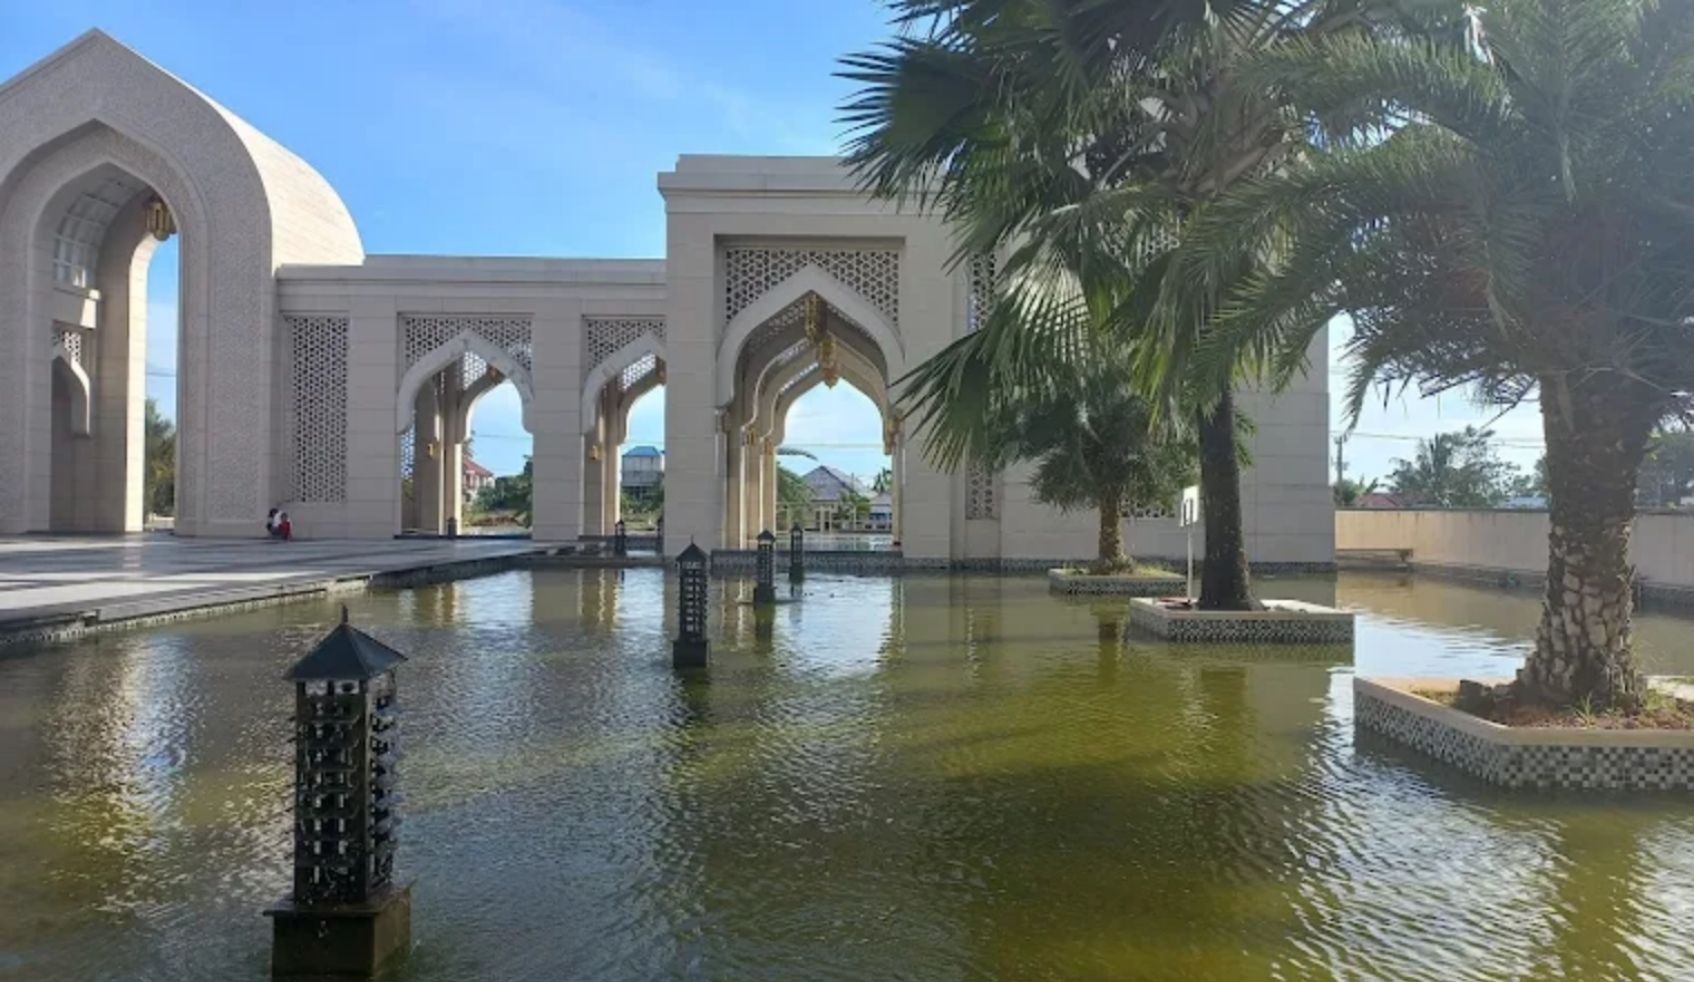 Halaman dan kolam Masjid Agung Al-Falah, Tanah Bumbu